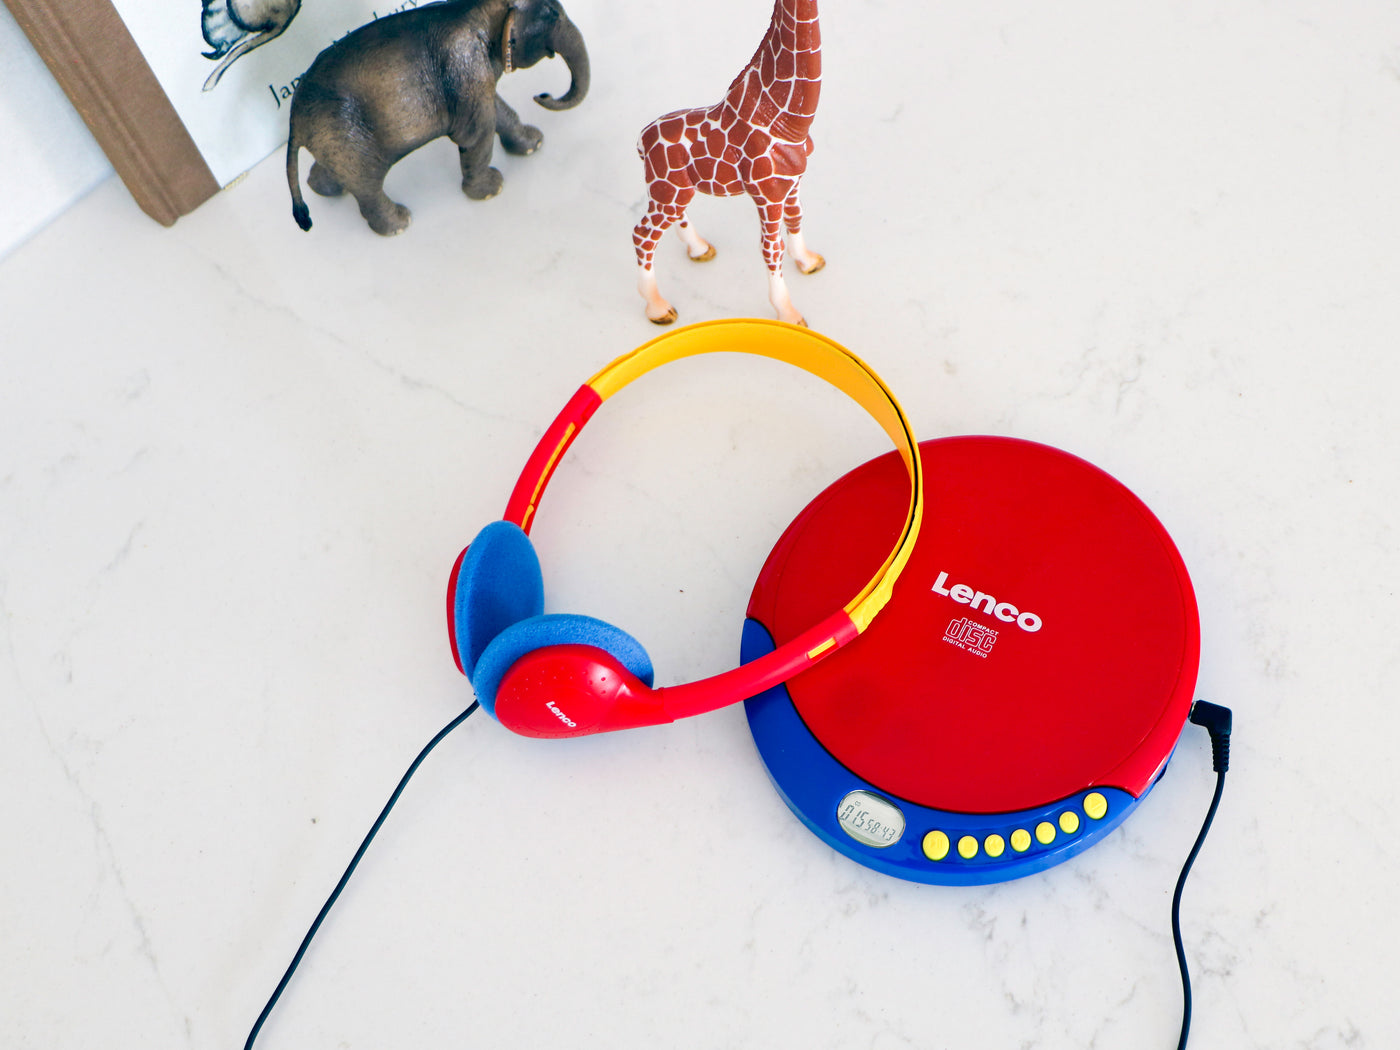 Lenco CD-021KIDS - Lecteur CD portable pour enfants avec casque, piles rechargeables et limiteur de son intégré - Multicolore